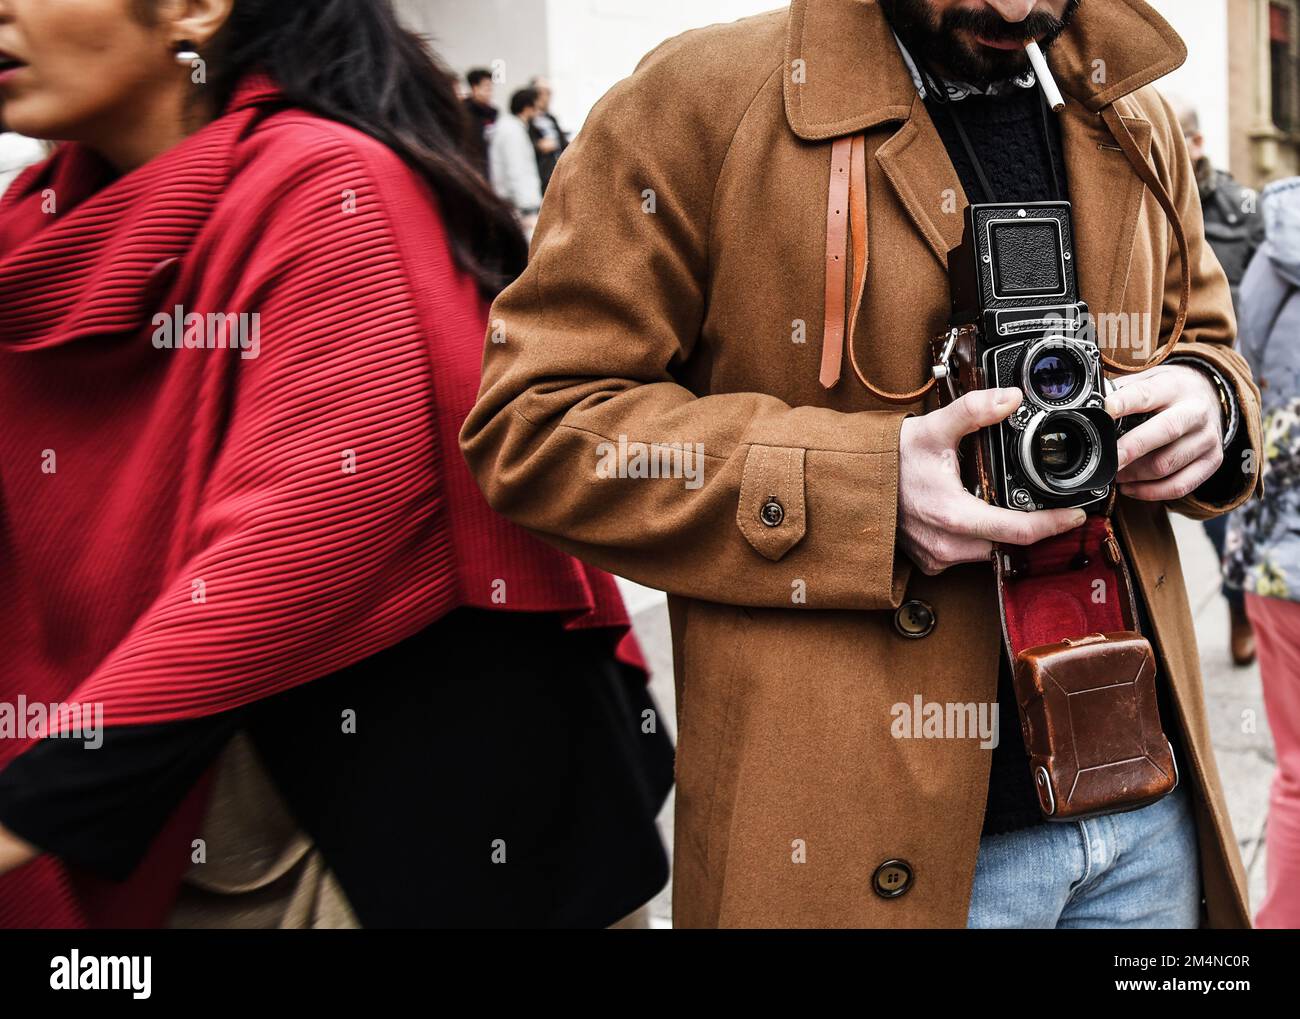 Hipster ragazzo con la fotocamera d'epoca fotografando le persone nel Città - fotogiornalista con una famosa fotocamera retrò che scatta foto nella folla durante str Foto Stock